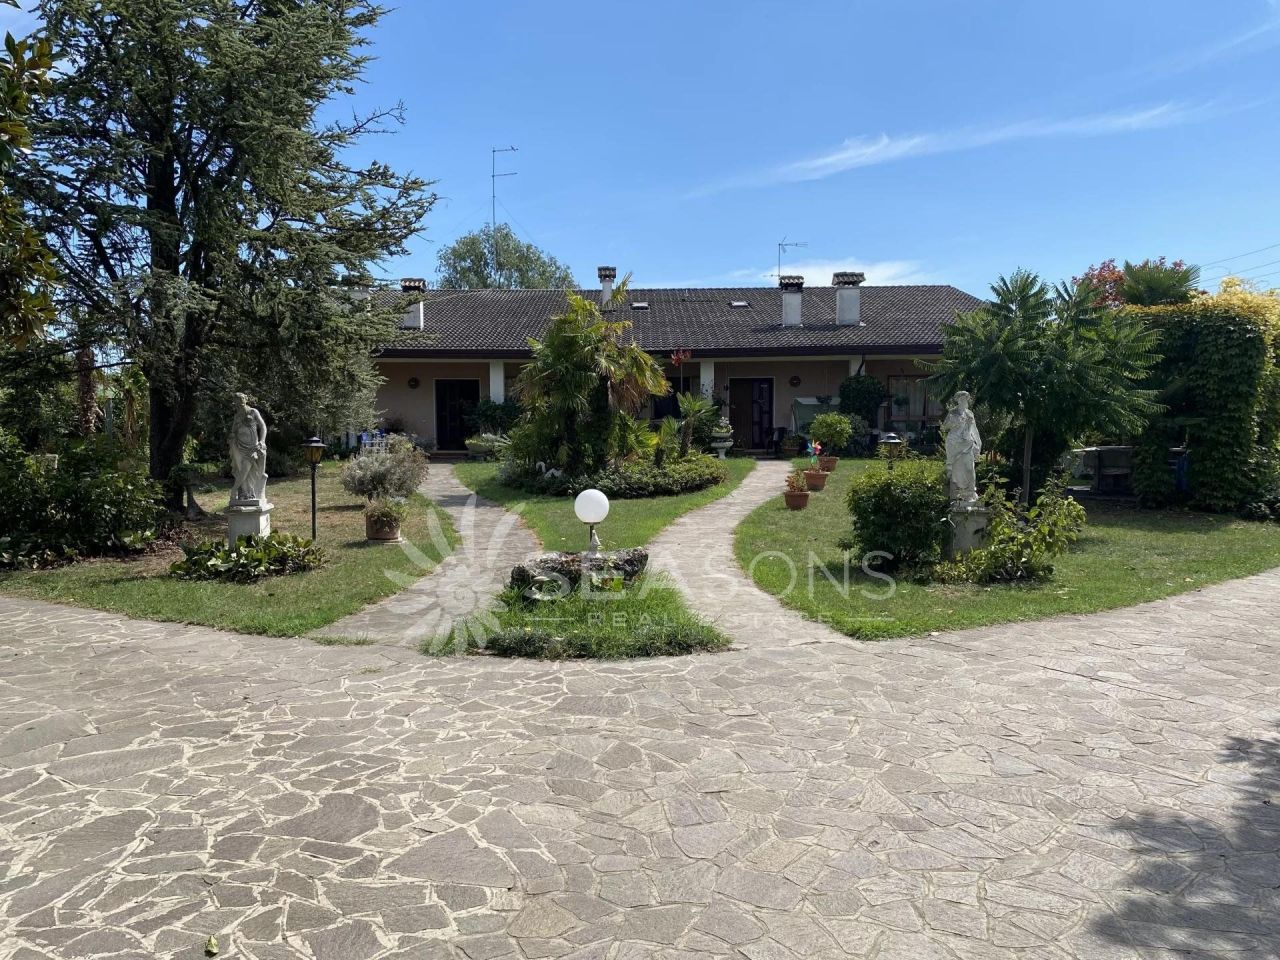 Villa in Caorle, Italy, 3 500 sq.m - picture 1